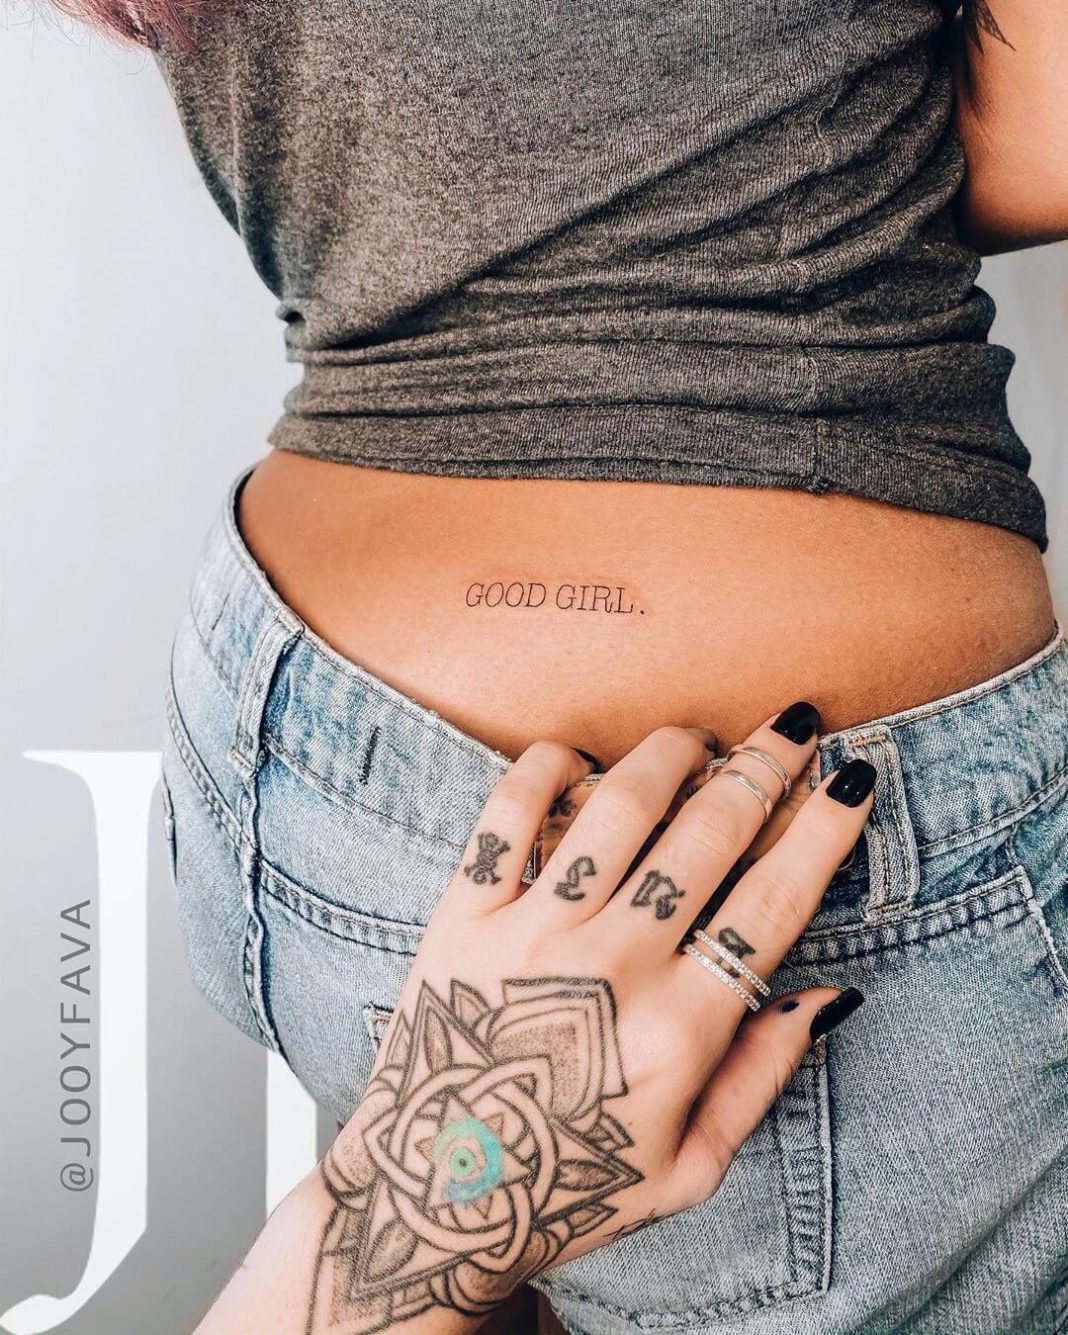 84 inspirações de tatuagens femininas para fazer em 2022. As tatuagens mais lindas que você vai ver hoje, e tudo isso para te inspirar na sua próxima tattoo. E não esqueça de sempre cuidar da saúde da sua pele pré e pós tatuagem!